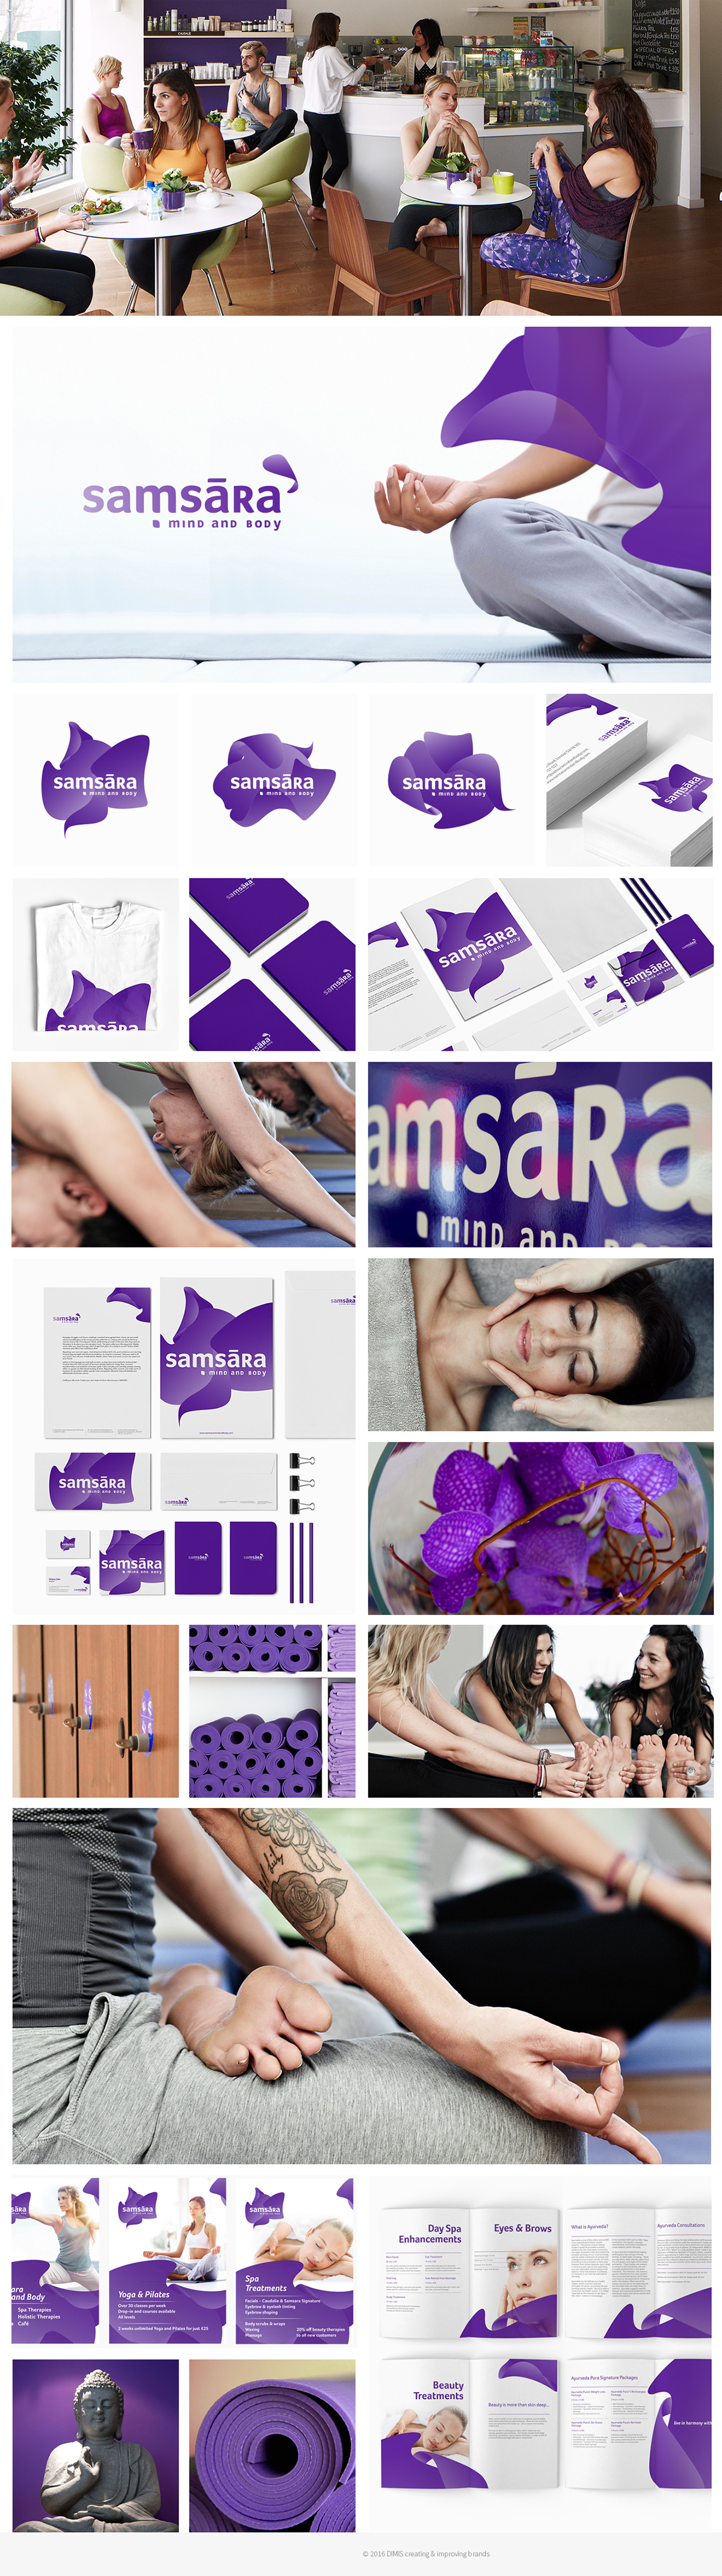 samsara Yoga brand identity visual identity Identity Design